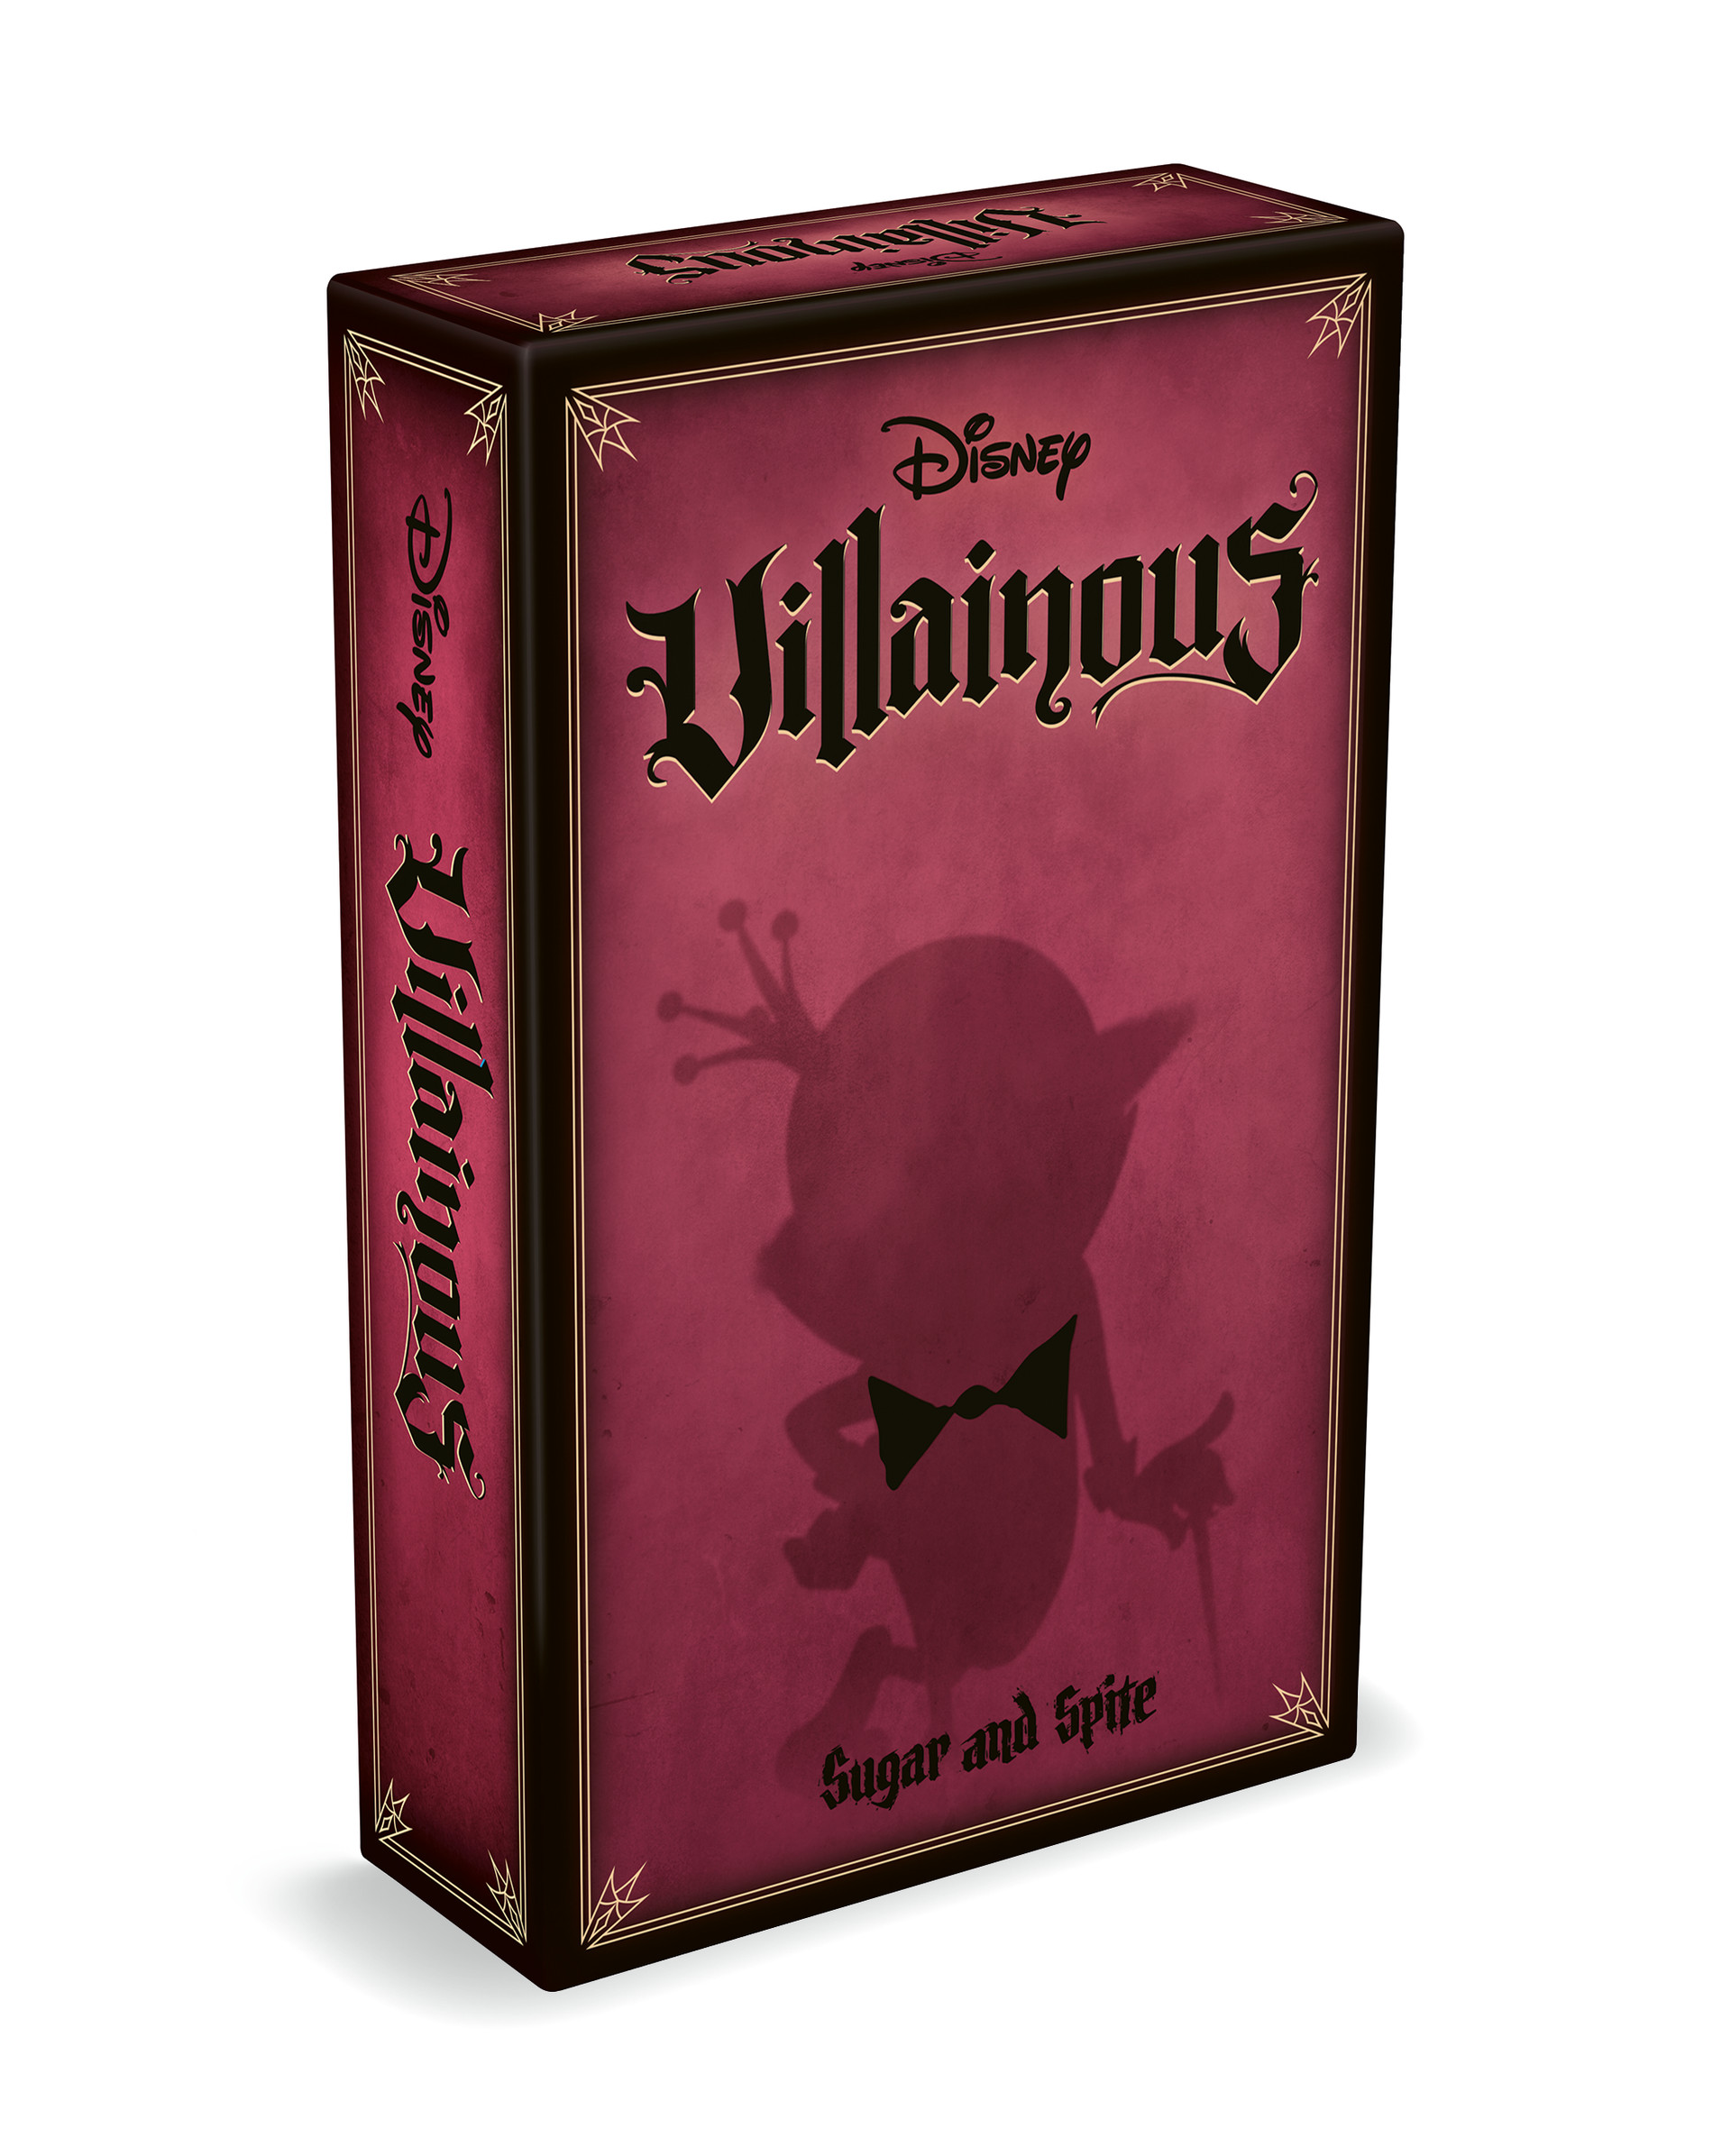 Коробка дополнения Disney Villainous: Sugar and Spite, красного цвета с силуэтом Короля конфеты из Въедливого Ральфа